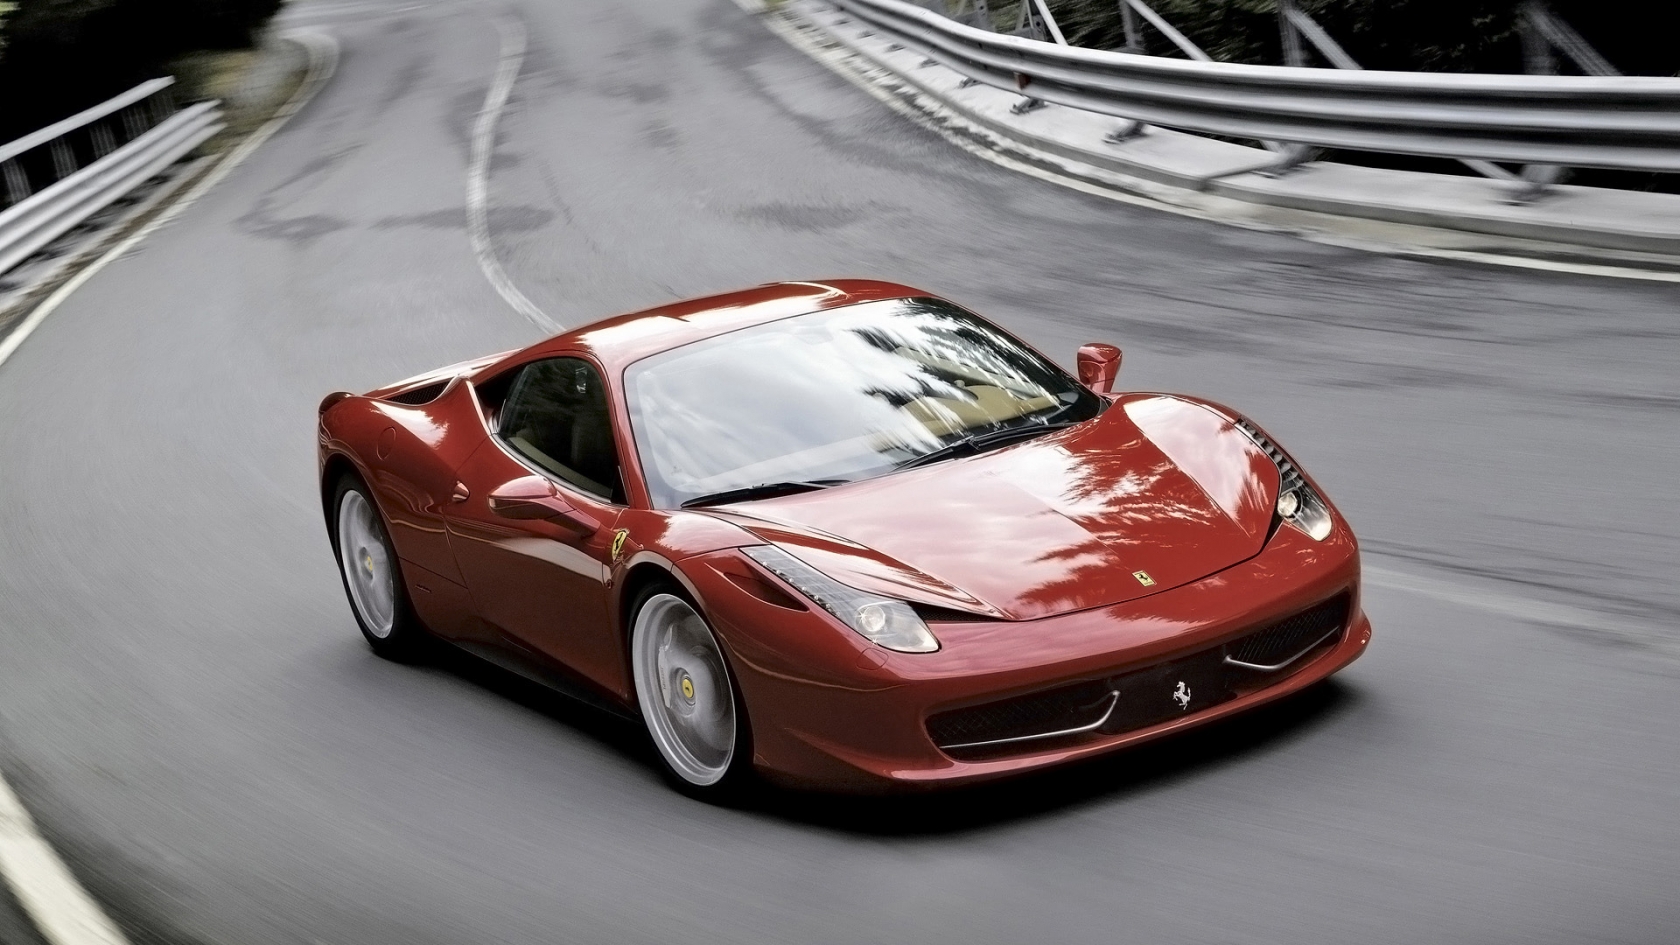 2011 Ferrari 458 Italia Red Speed for 1680 x 945 HDTV resolution